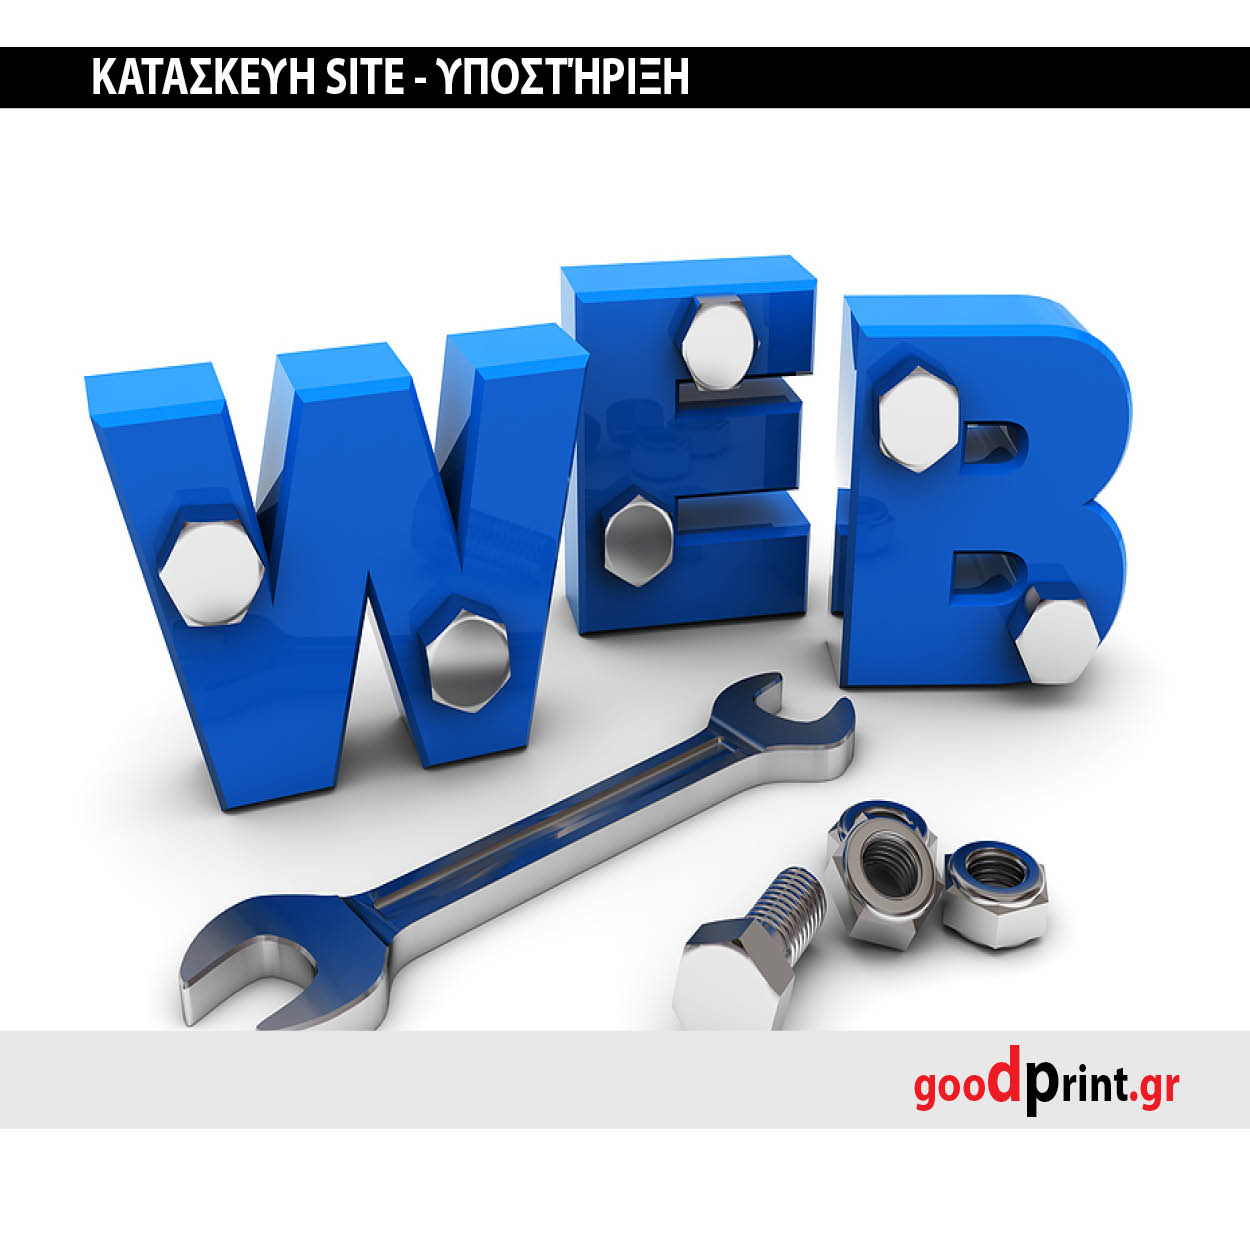 Site tools. Веб инструменты. Инструменты для разработки веб сайтов. Web. Веб-инструментарий.